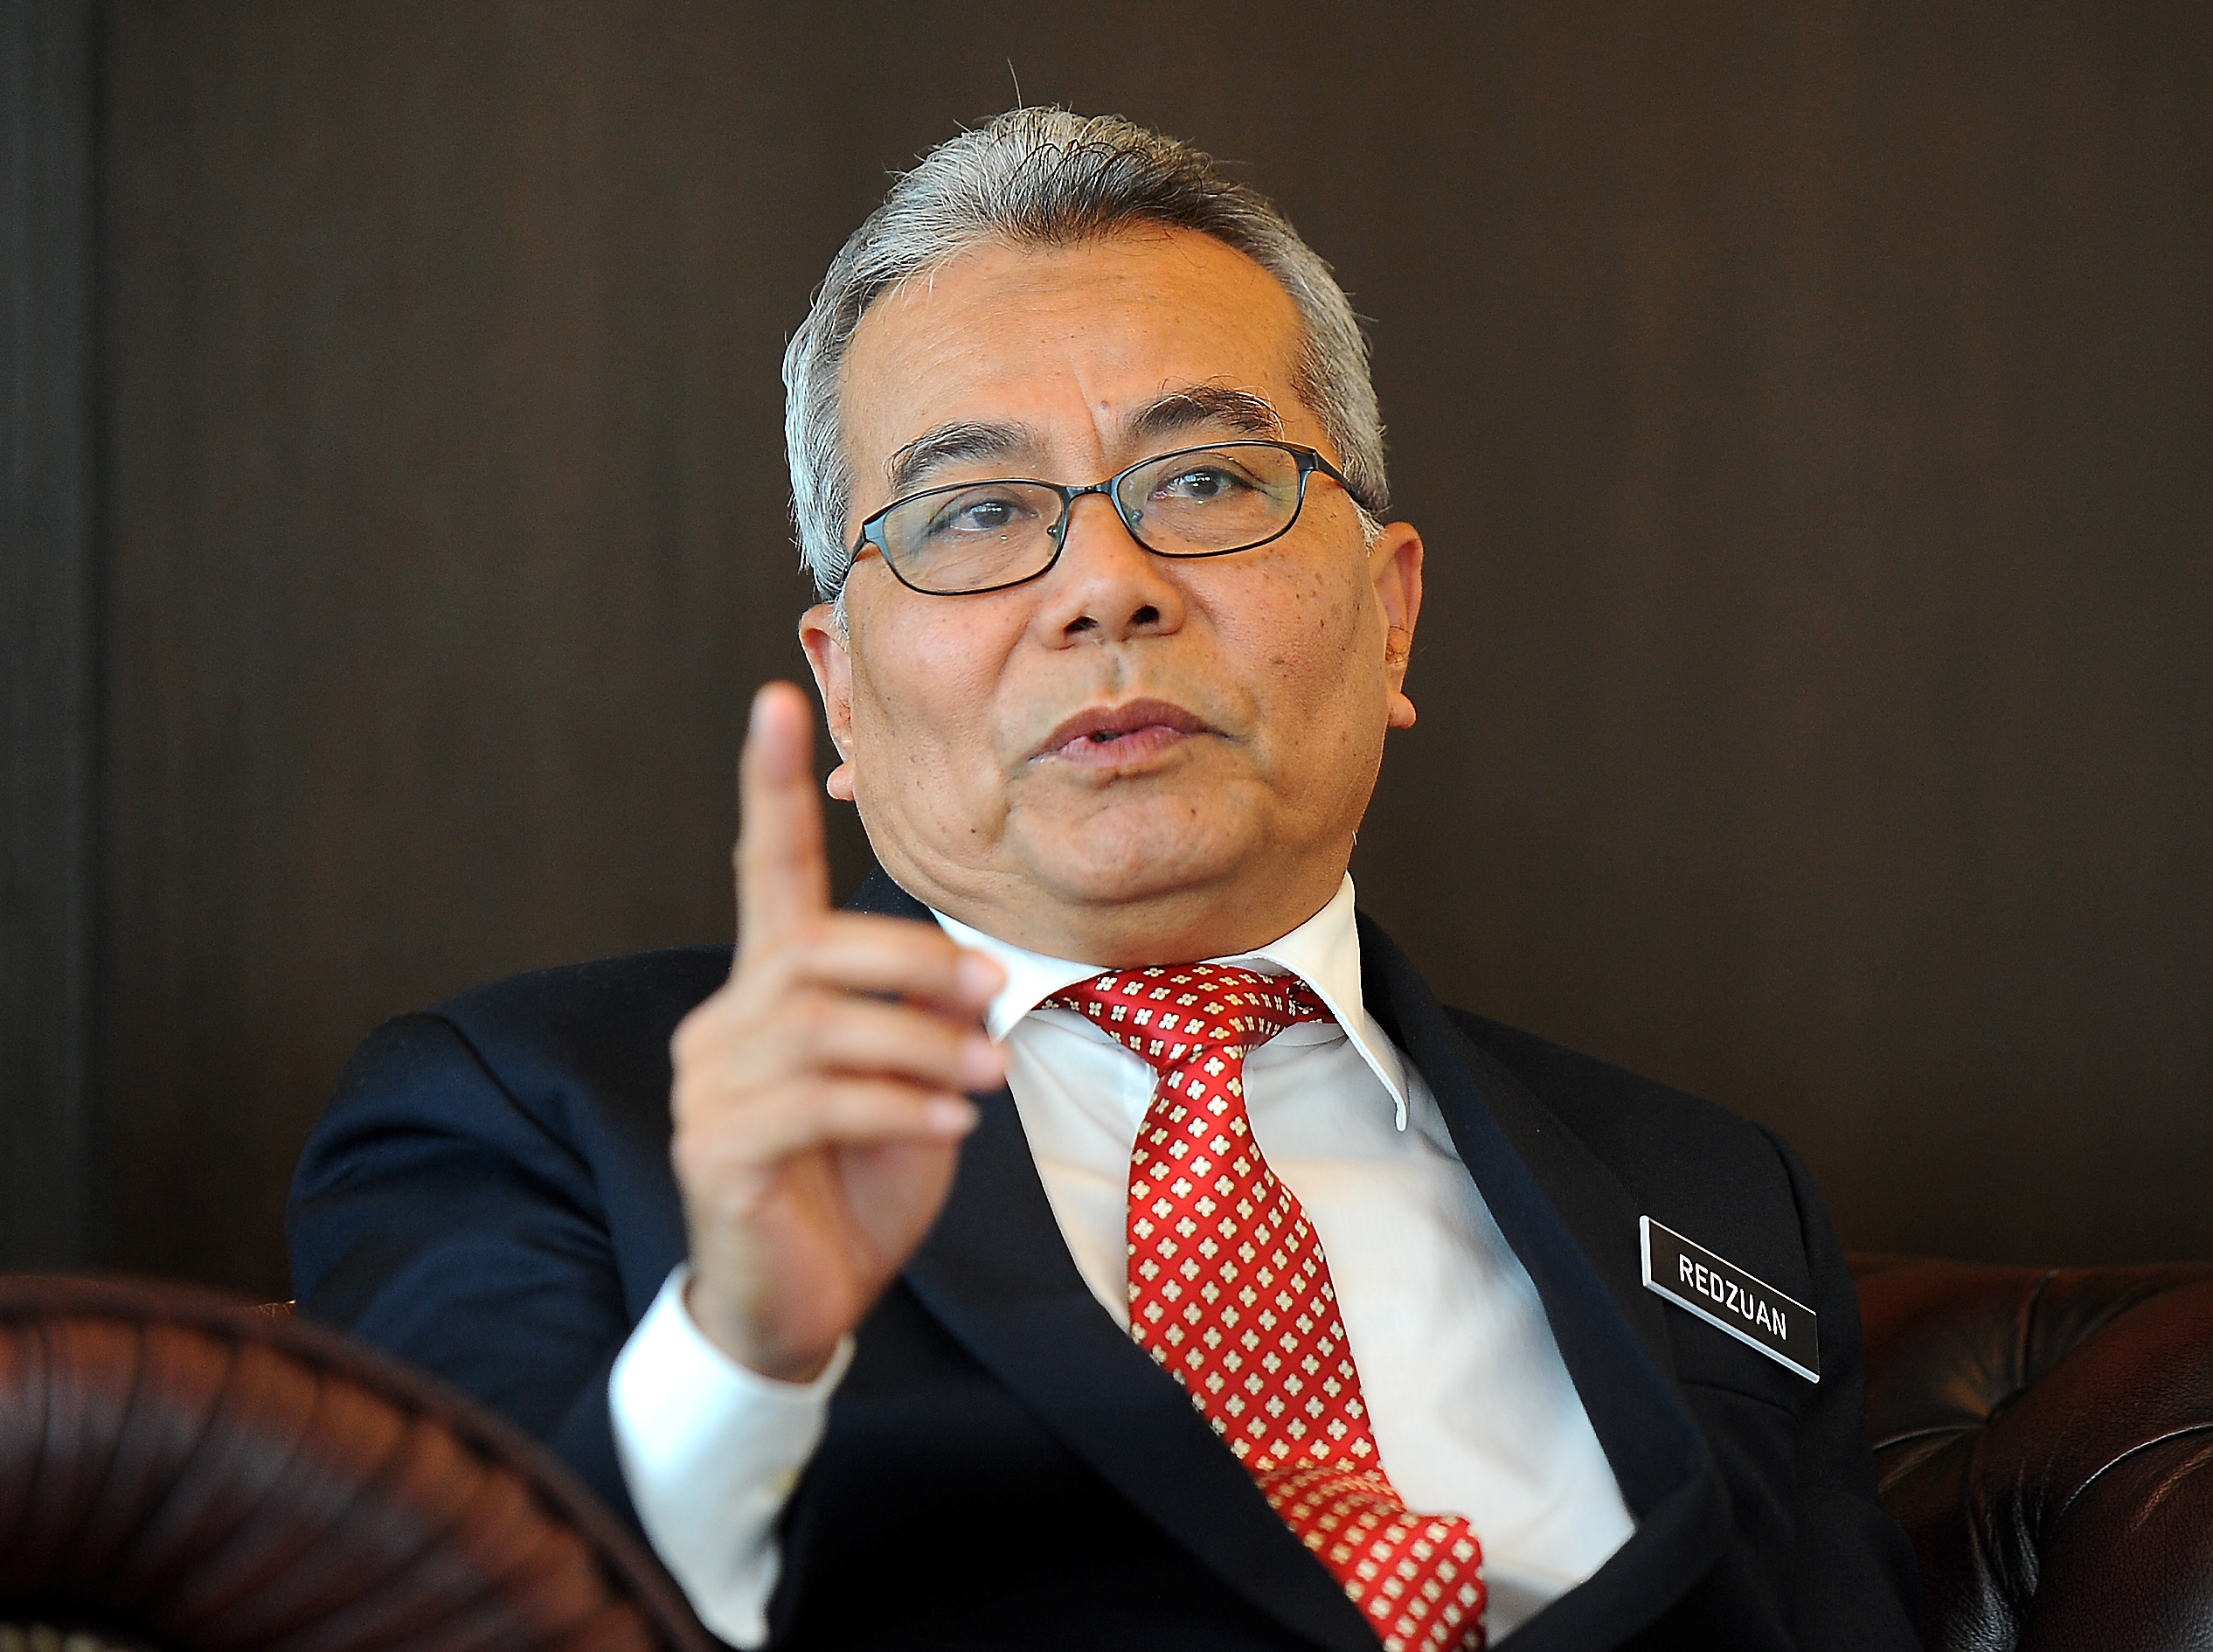 Datuk Seri Mohd. Redzuan Mohd. Yusof